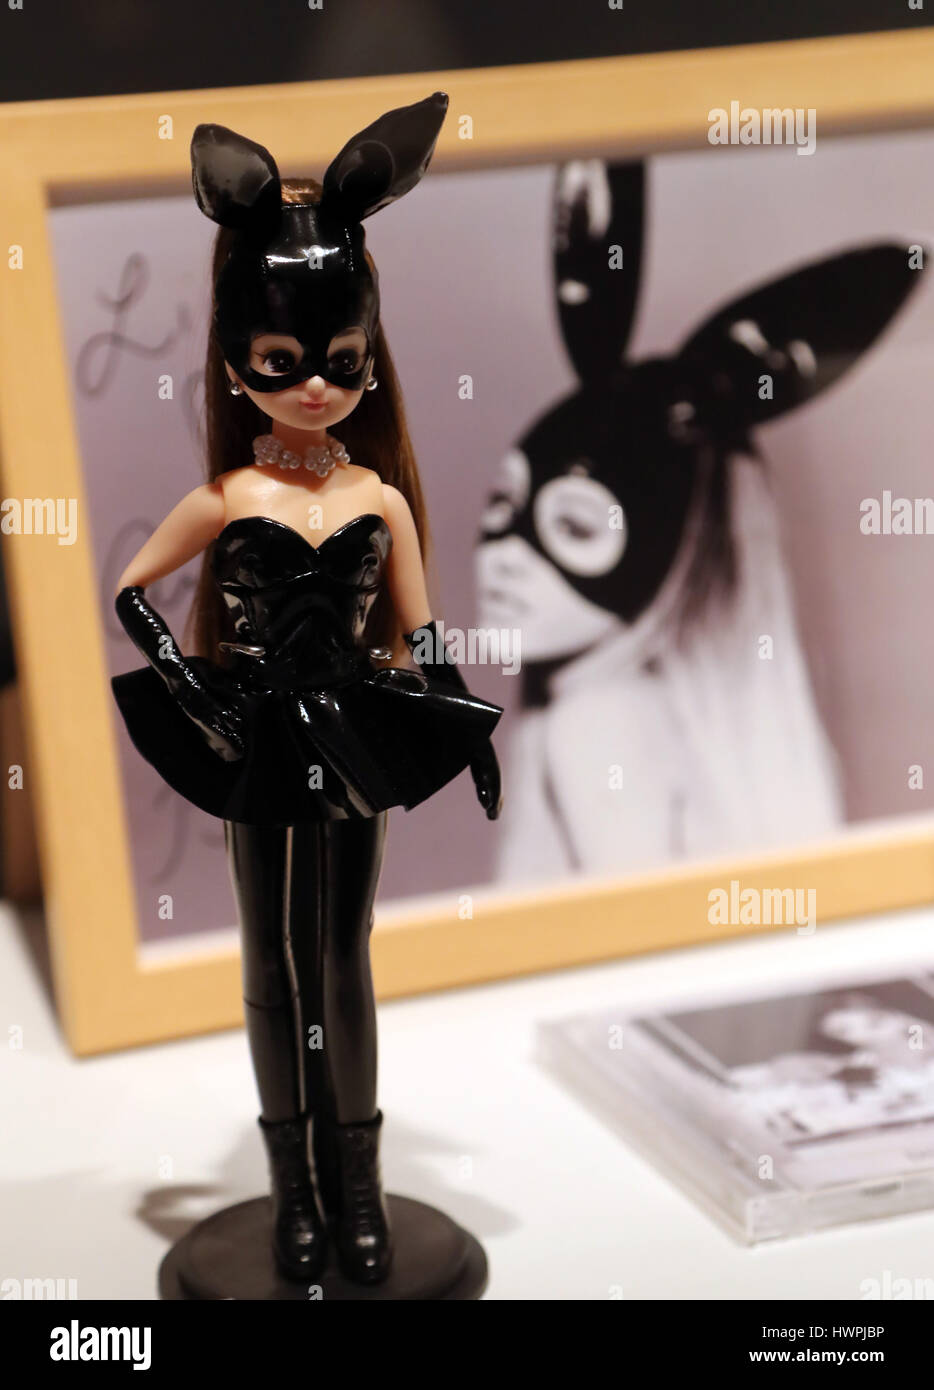 Tokio, Japón. 22 Mar, 2017. Una Licca-chan muñeca modelo de colaboración  con el cantante norteamericano Ariana Grande se muestra para la exposición  de muñecas Licca-chan para celebrar el 50 cumpleaños de la